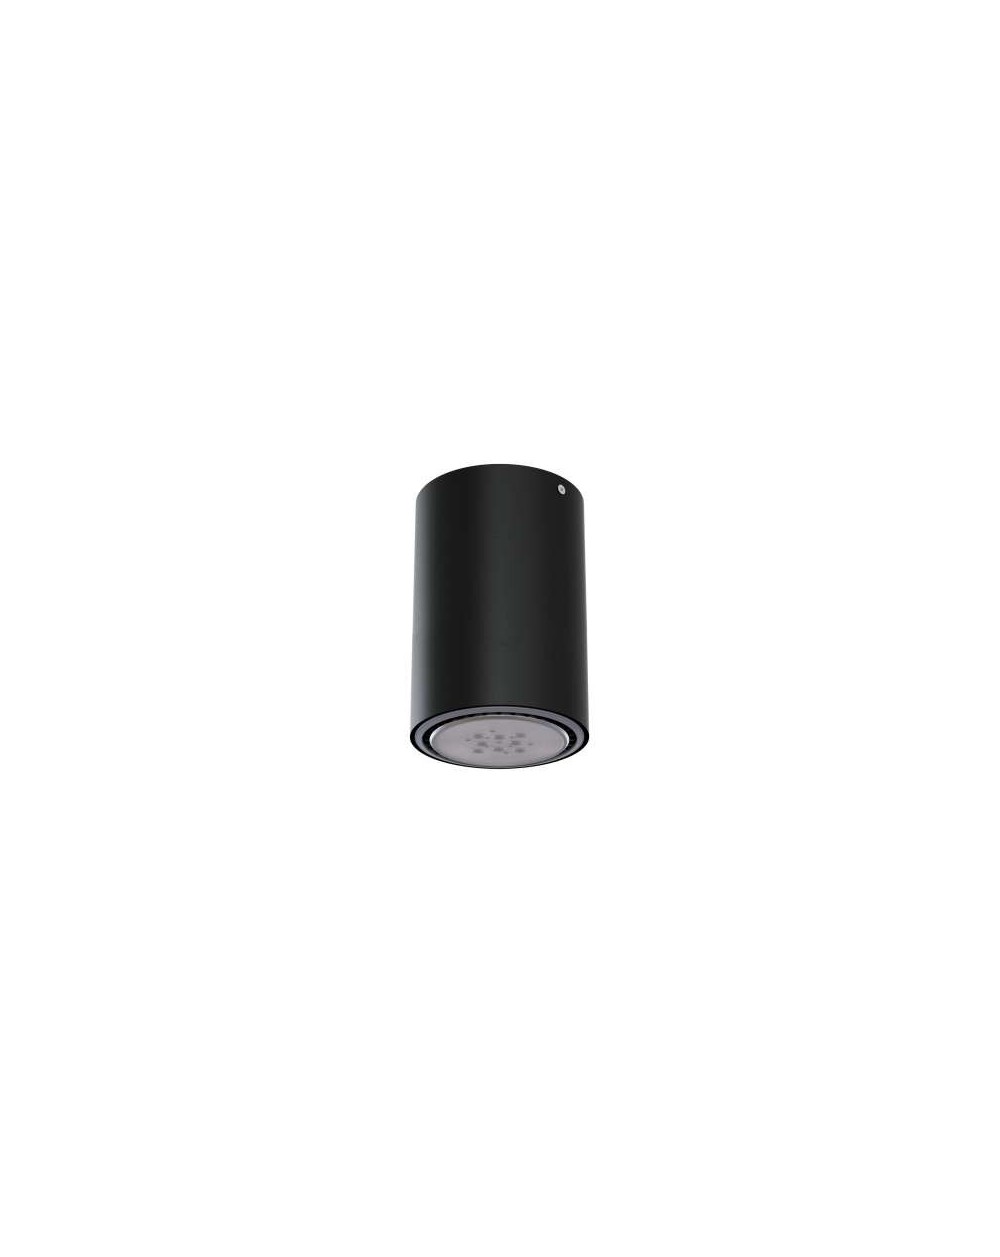 Lampa sufitowa / natynkowa Minimal - wersja C1 NT 1 x 60W - Cleoni okrągła tuba kolor czarny aluminium czarny lub biały 